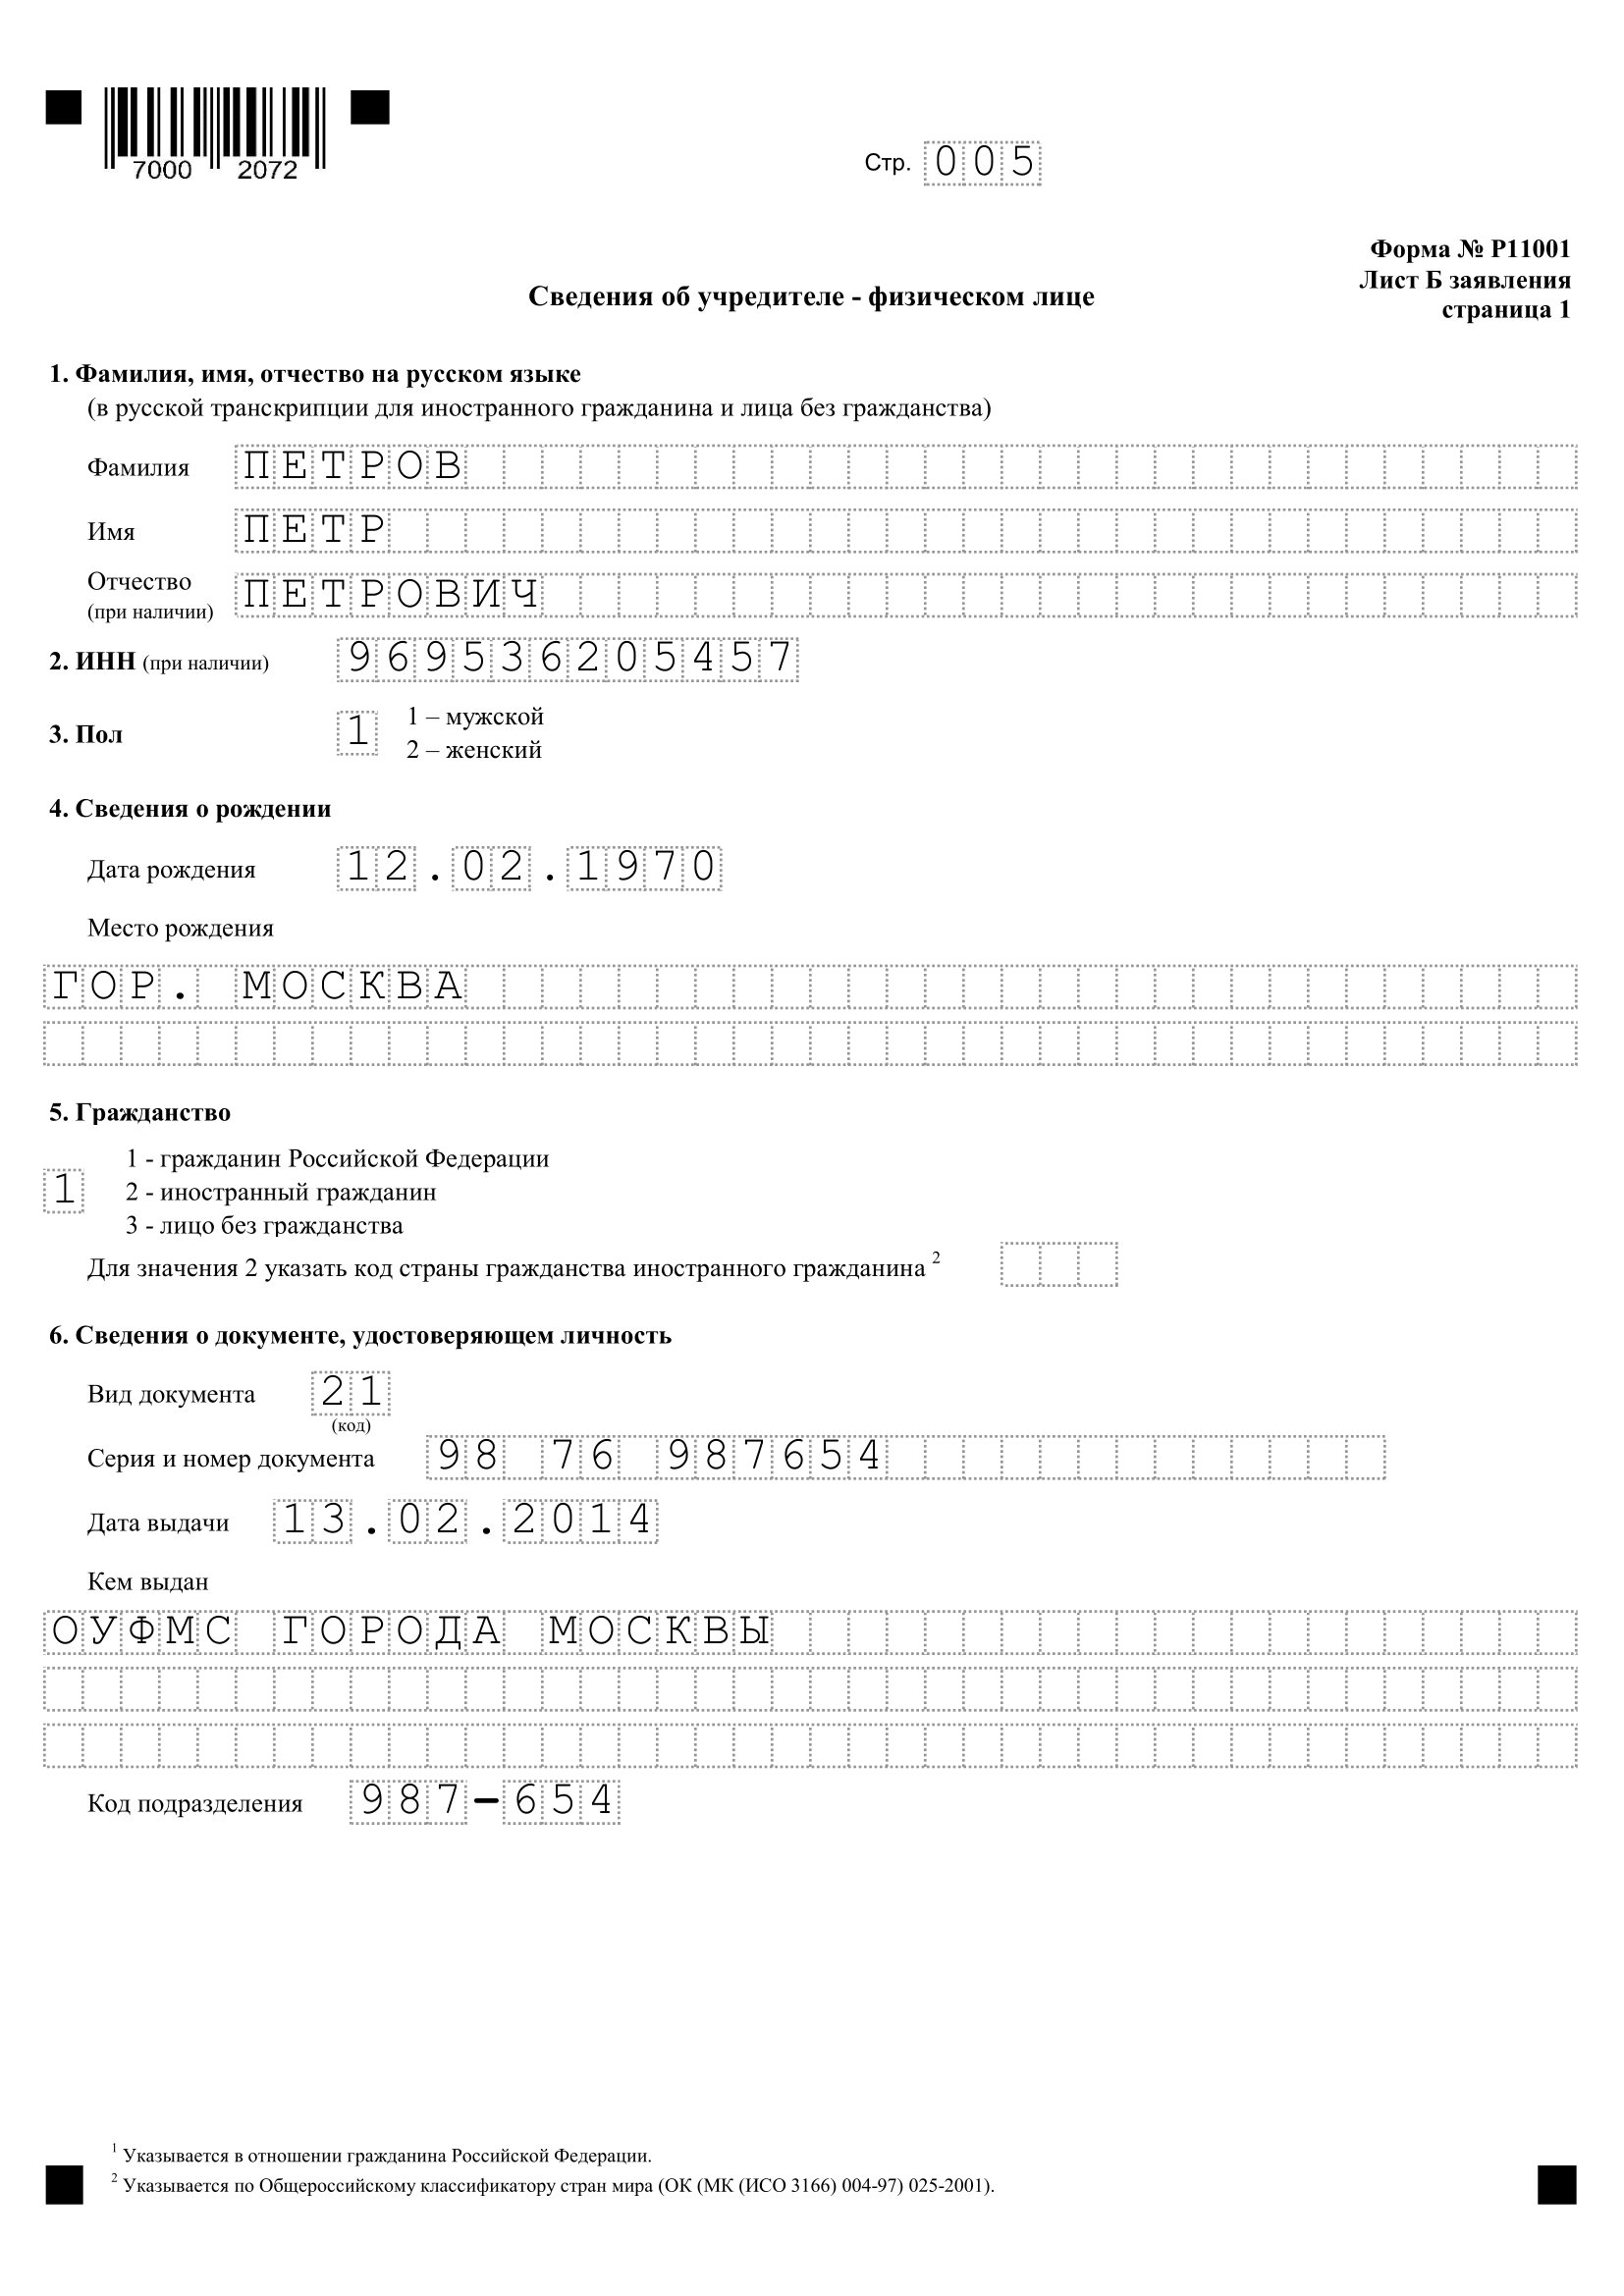 форма р11001 образец заполнения с одним учредителем, страница 5